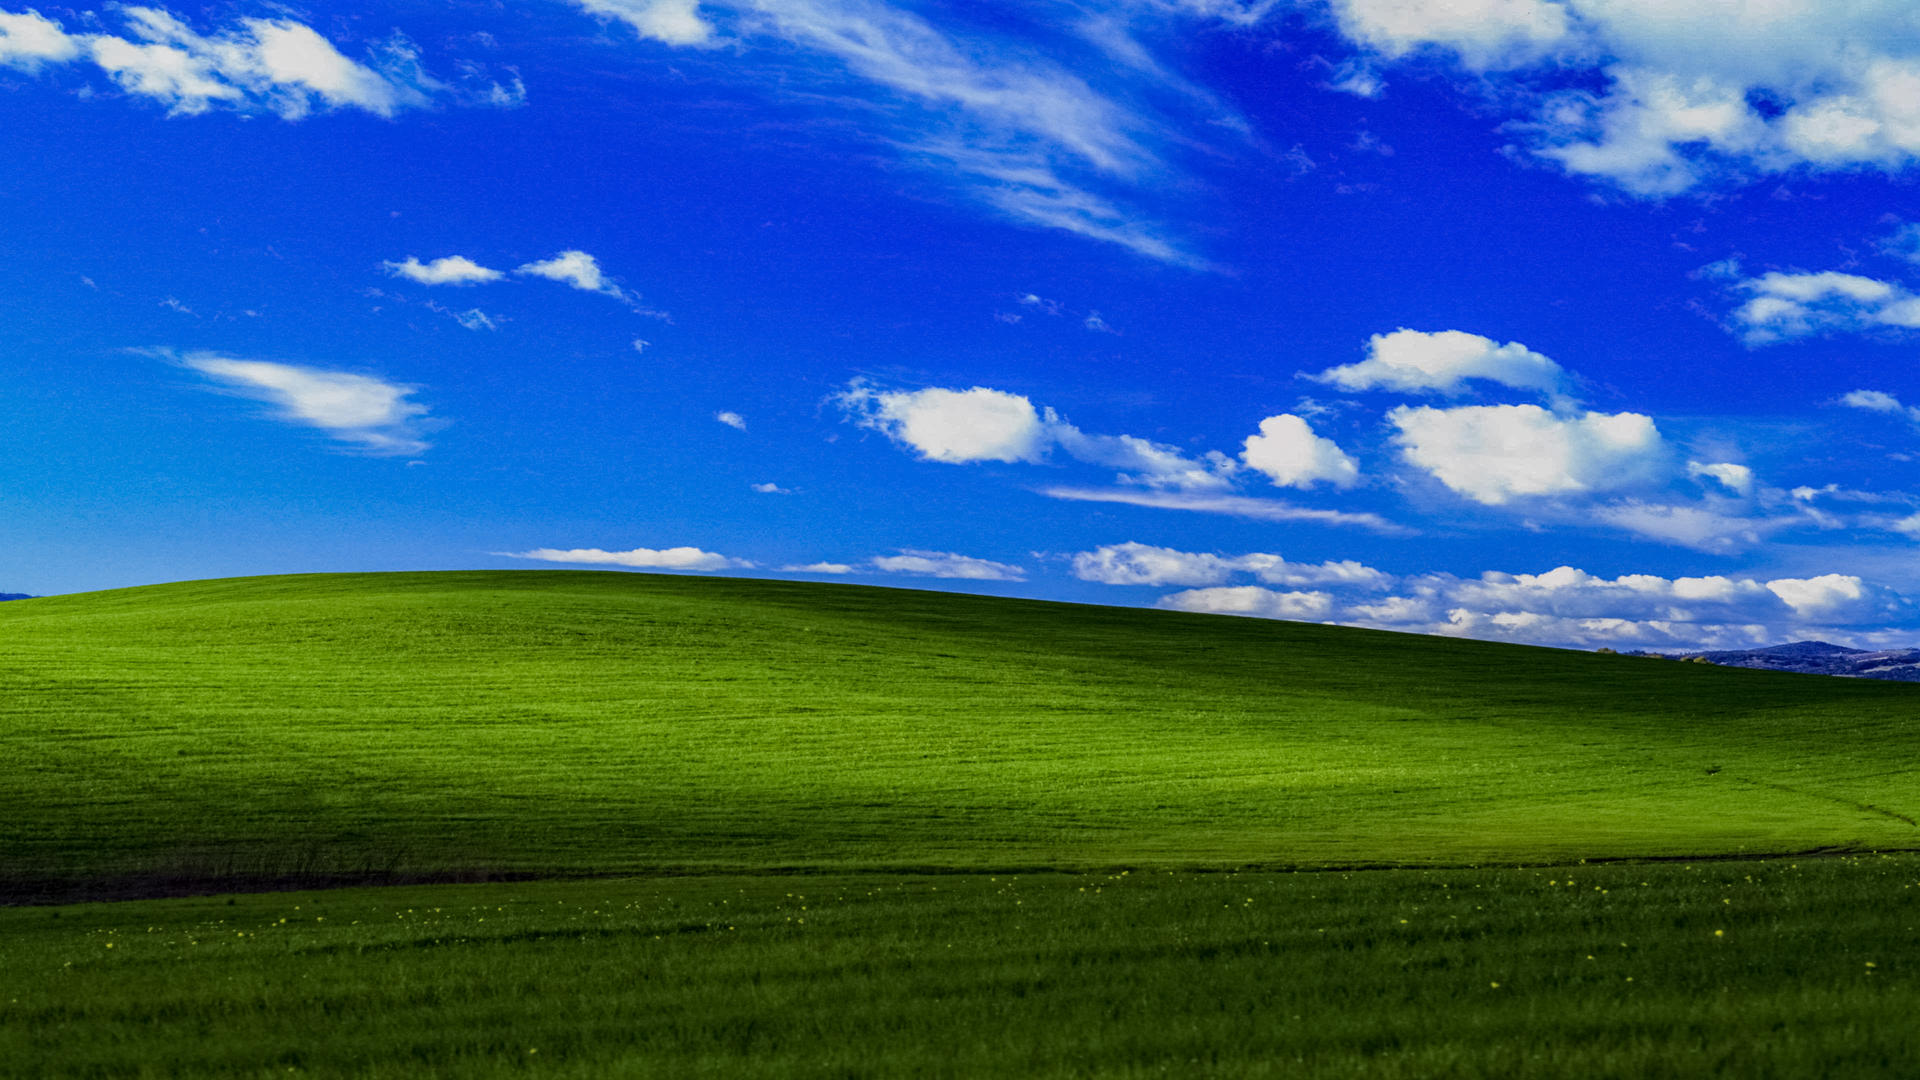 Màn hình nền Windows XP là một trong những bức ảnh nền phổ biến nhất mà ai cũng nhận ra. Nó mang lại cảm giác hoài niệm và đặc biệt cho những ai đã từng sử dụng Windows XP, hãy xem bức ảnh này để hồi tưởng lại ký ức của bạn.